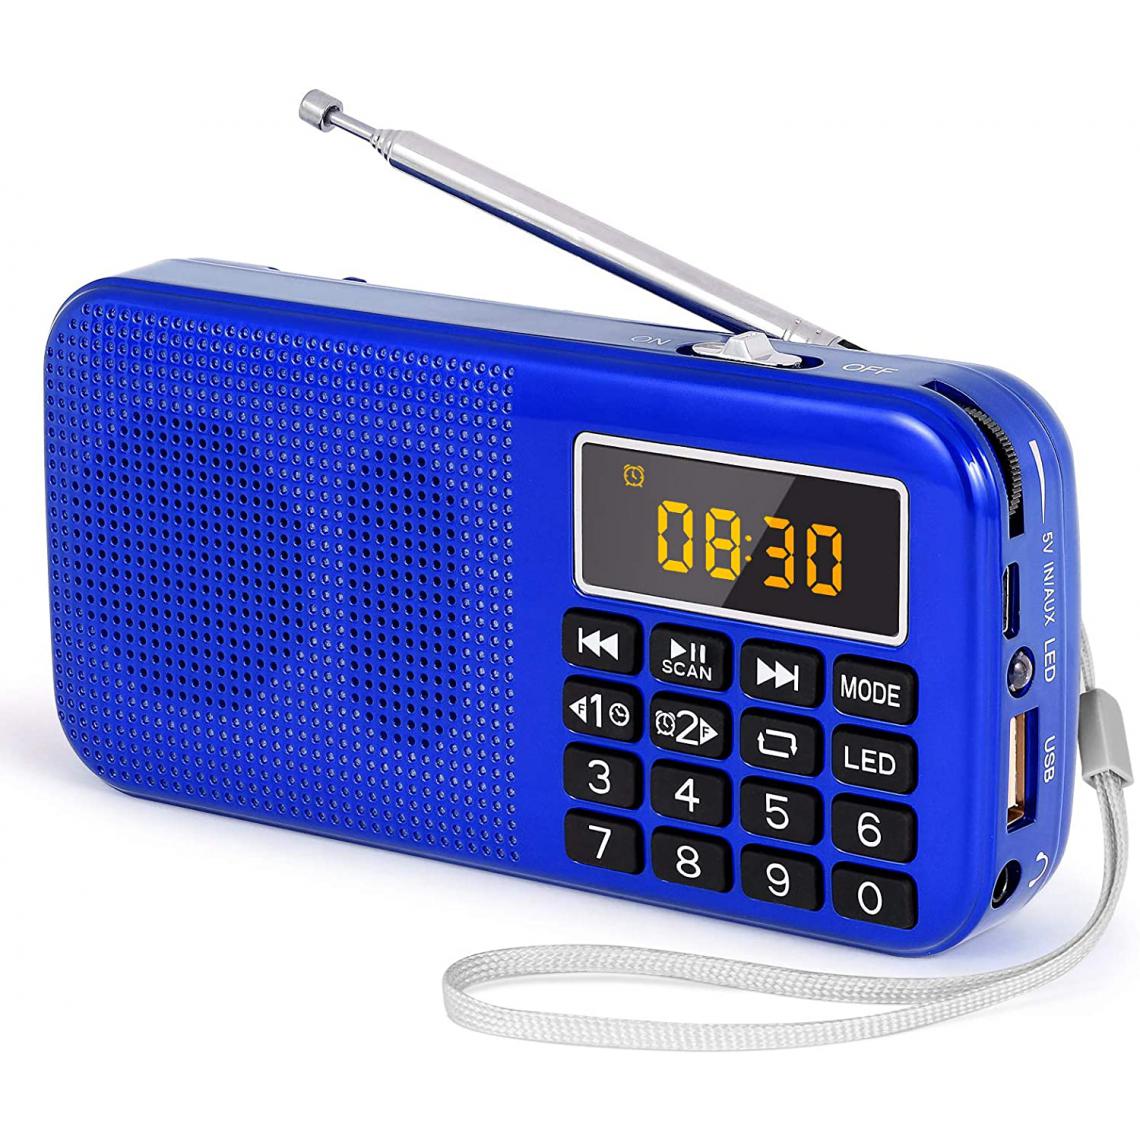 Prunus - radio portable MP3 SD USB AUX avec batterie rechargeable de grande capacité (3000mAh) bleu - Radio